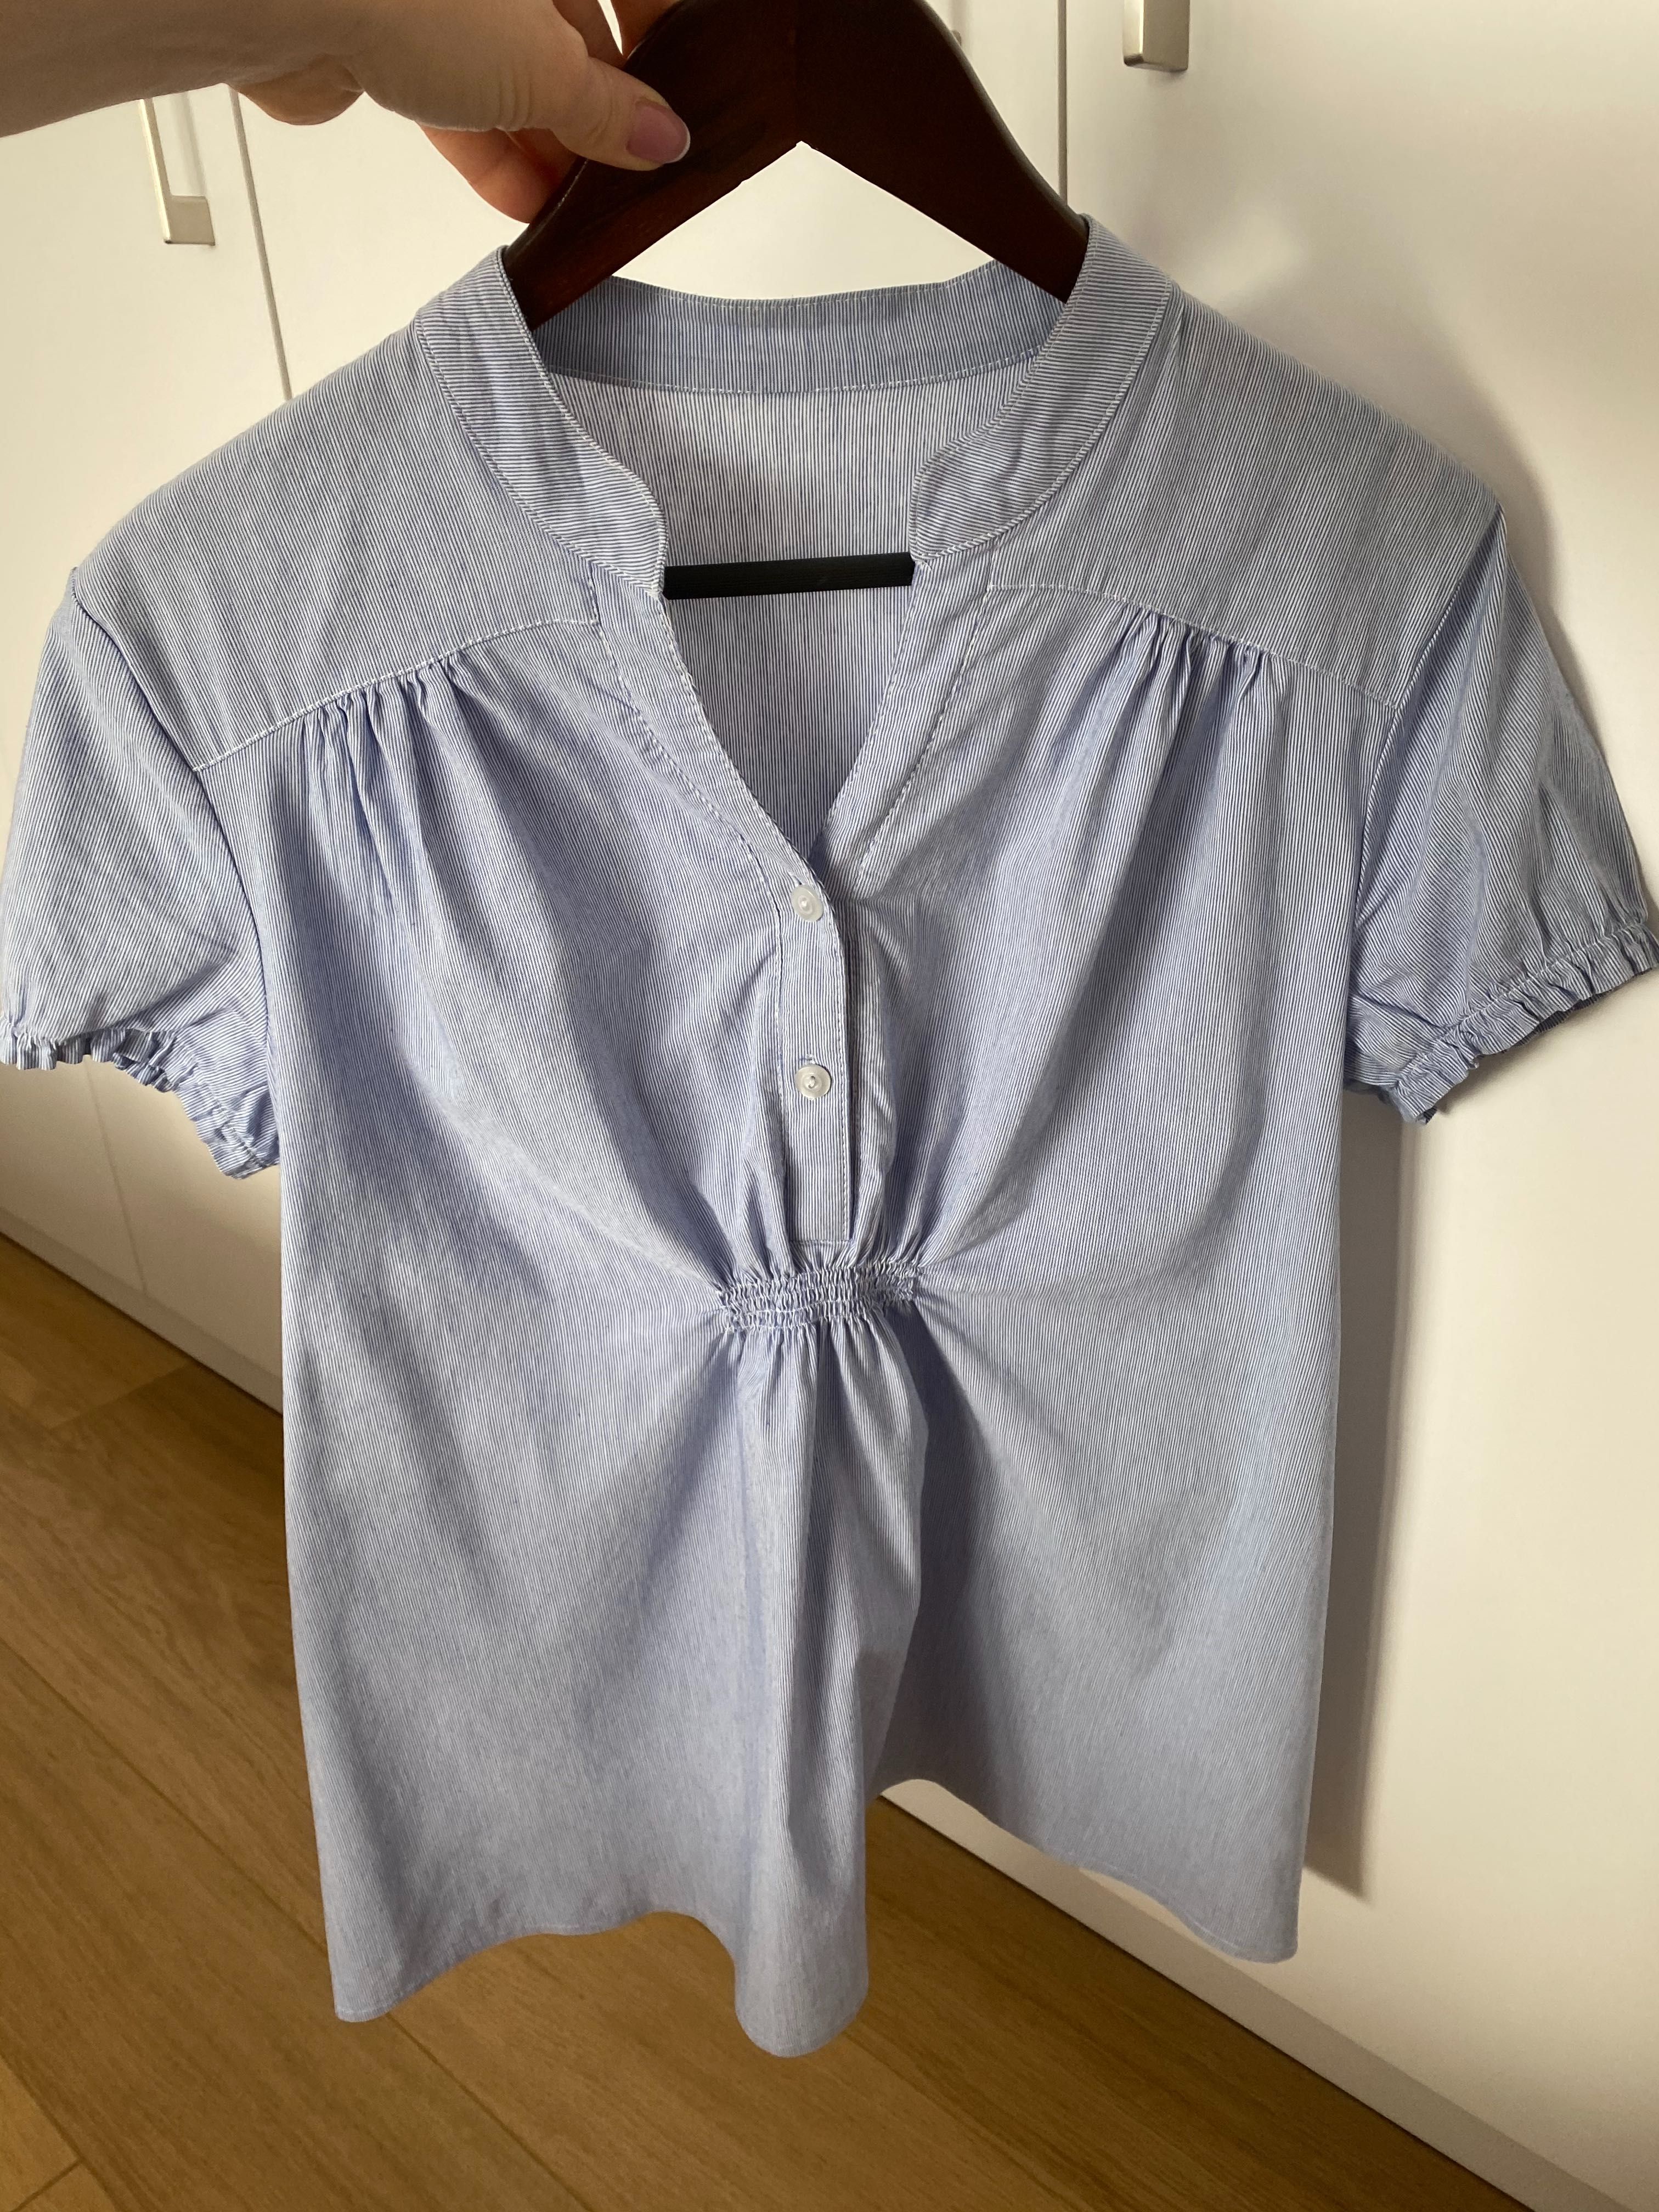 Bluzka ciążowa XL jak nowa firma BRANCO